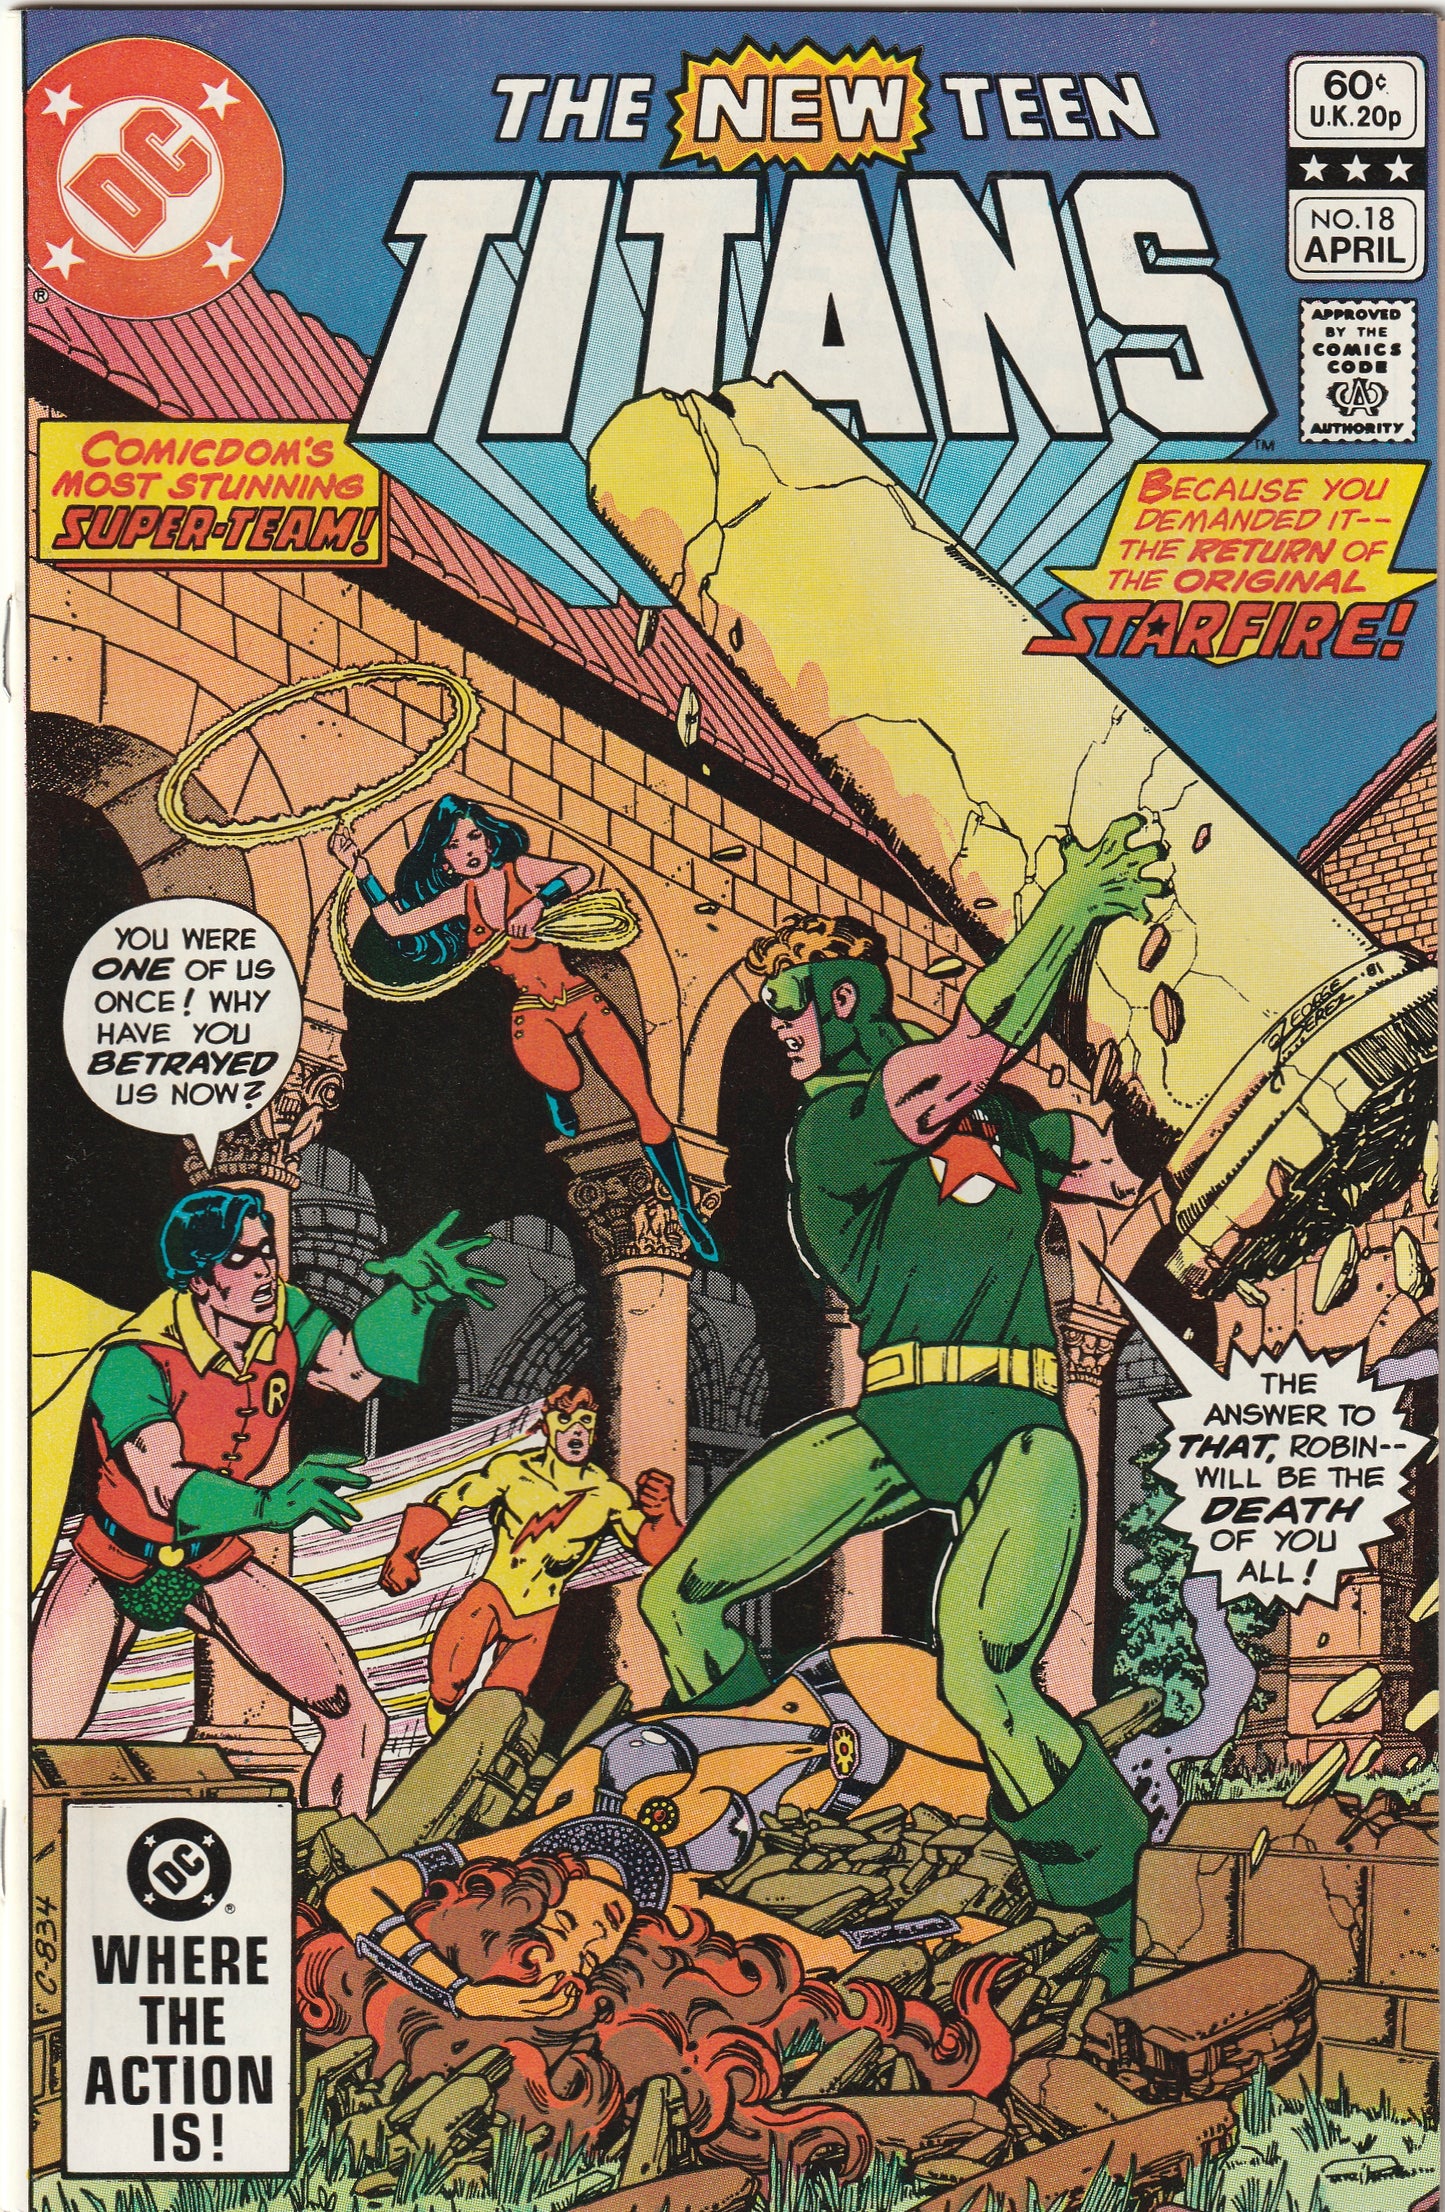 New Teen Titans #18 (1982) - Return of Starfire